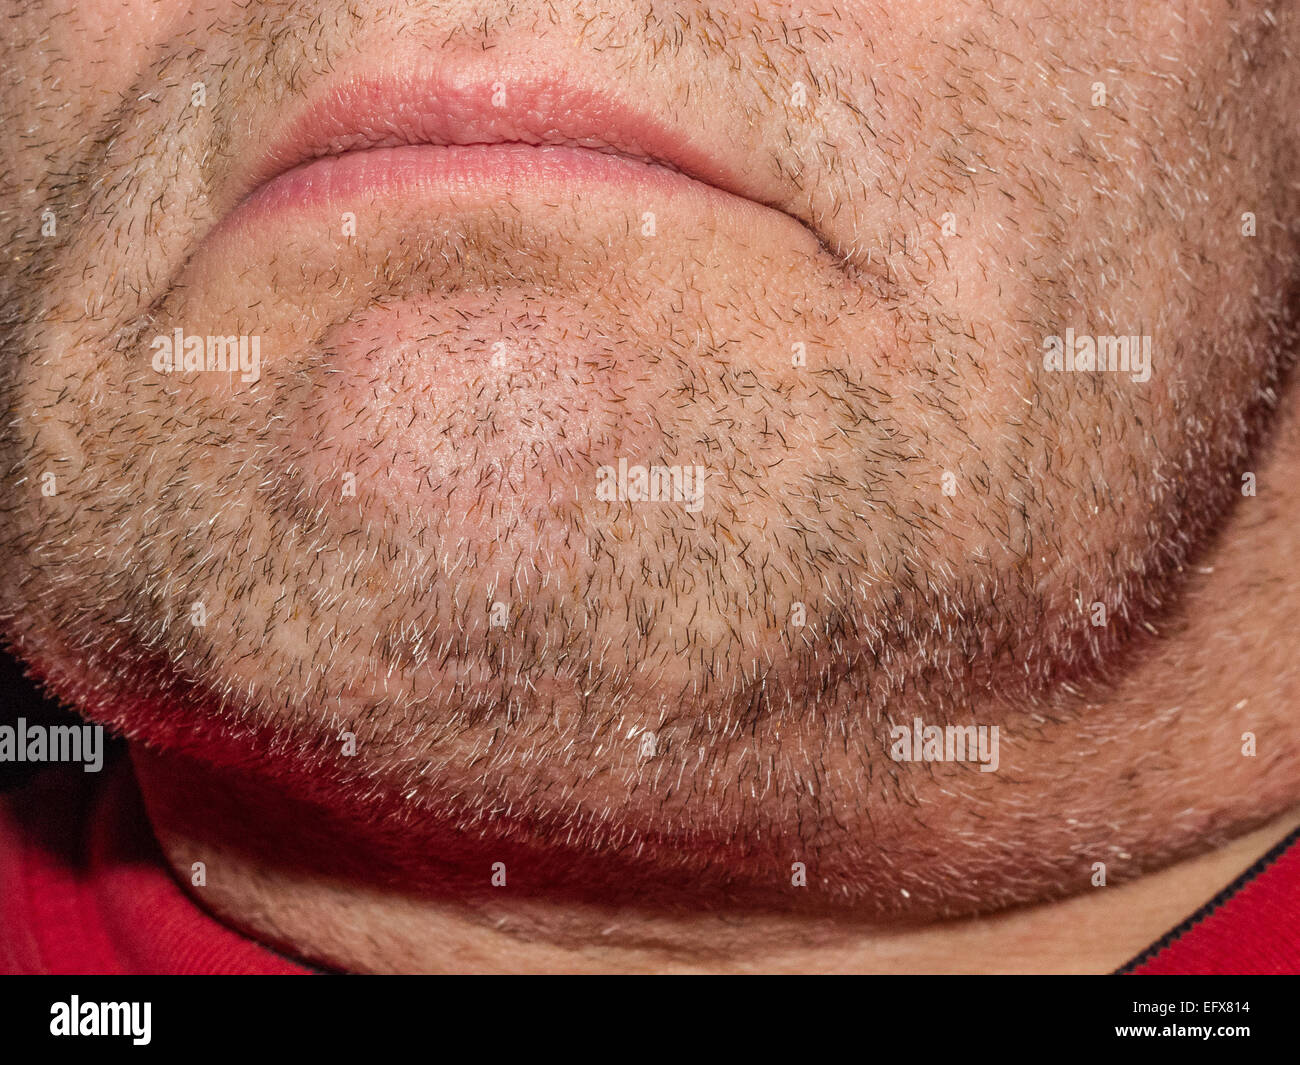 Makro Nahaufnahme ein stark bartstoppeligen männliche Kinn zeigen Bartwuchs. Modell ist nicht identifizierbar. Nur Kinn und Mund gezeigt. Stockfoto